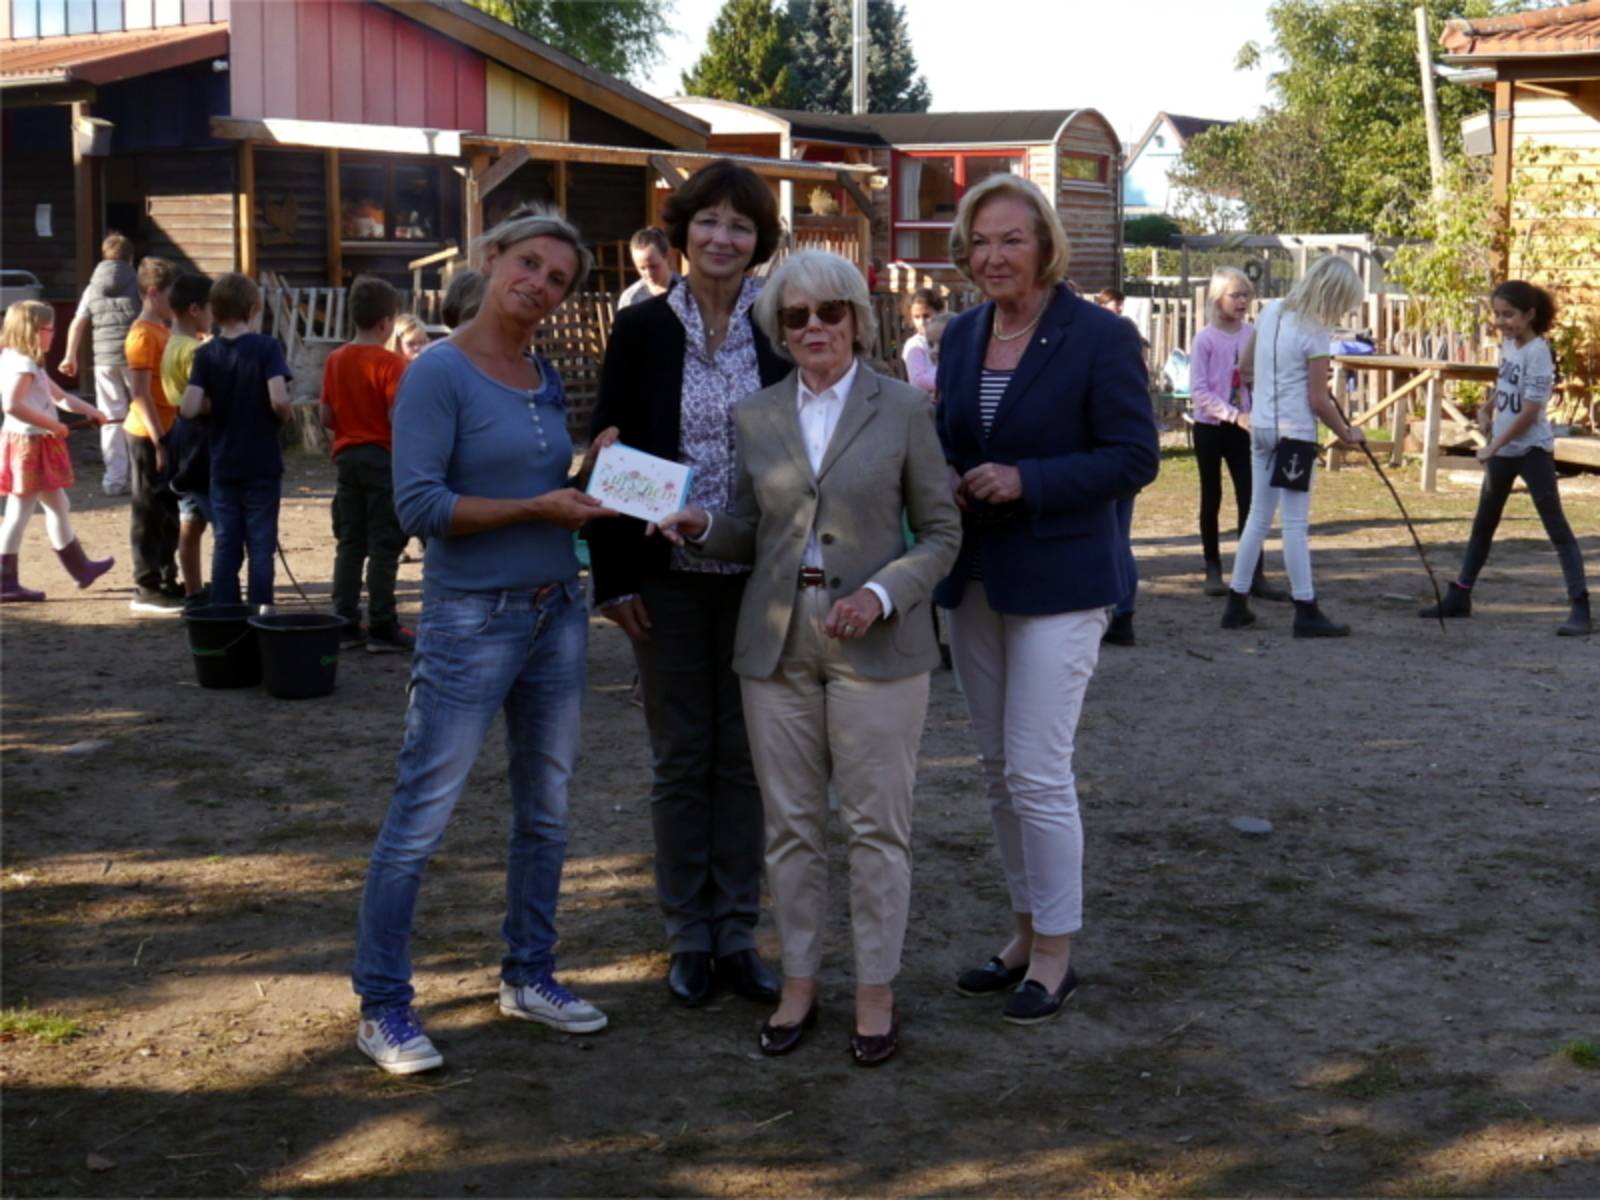 Frau Michalke, Frau Vogels-Beydals und Frau Dr. Fink-Tornau vom Inner Wheel Club Hannover-Opernhaus überreichen eine Spende für den Stadtteilbauernhof.